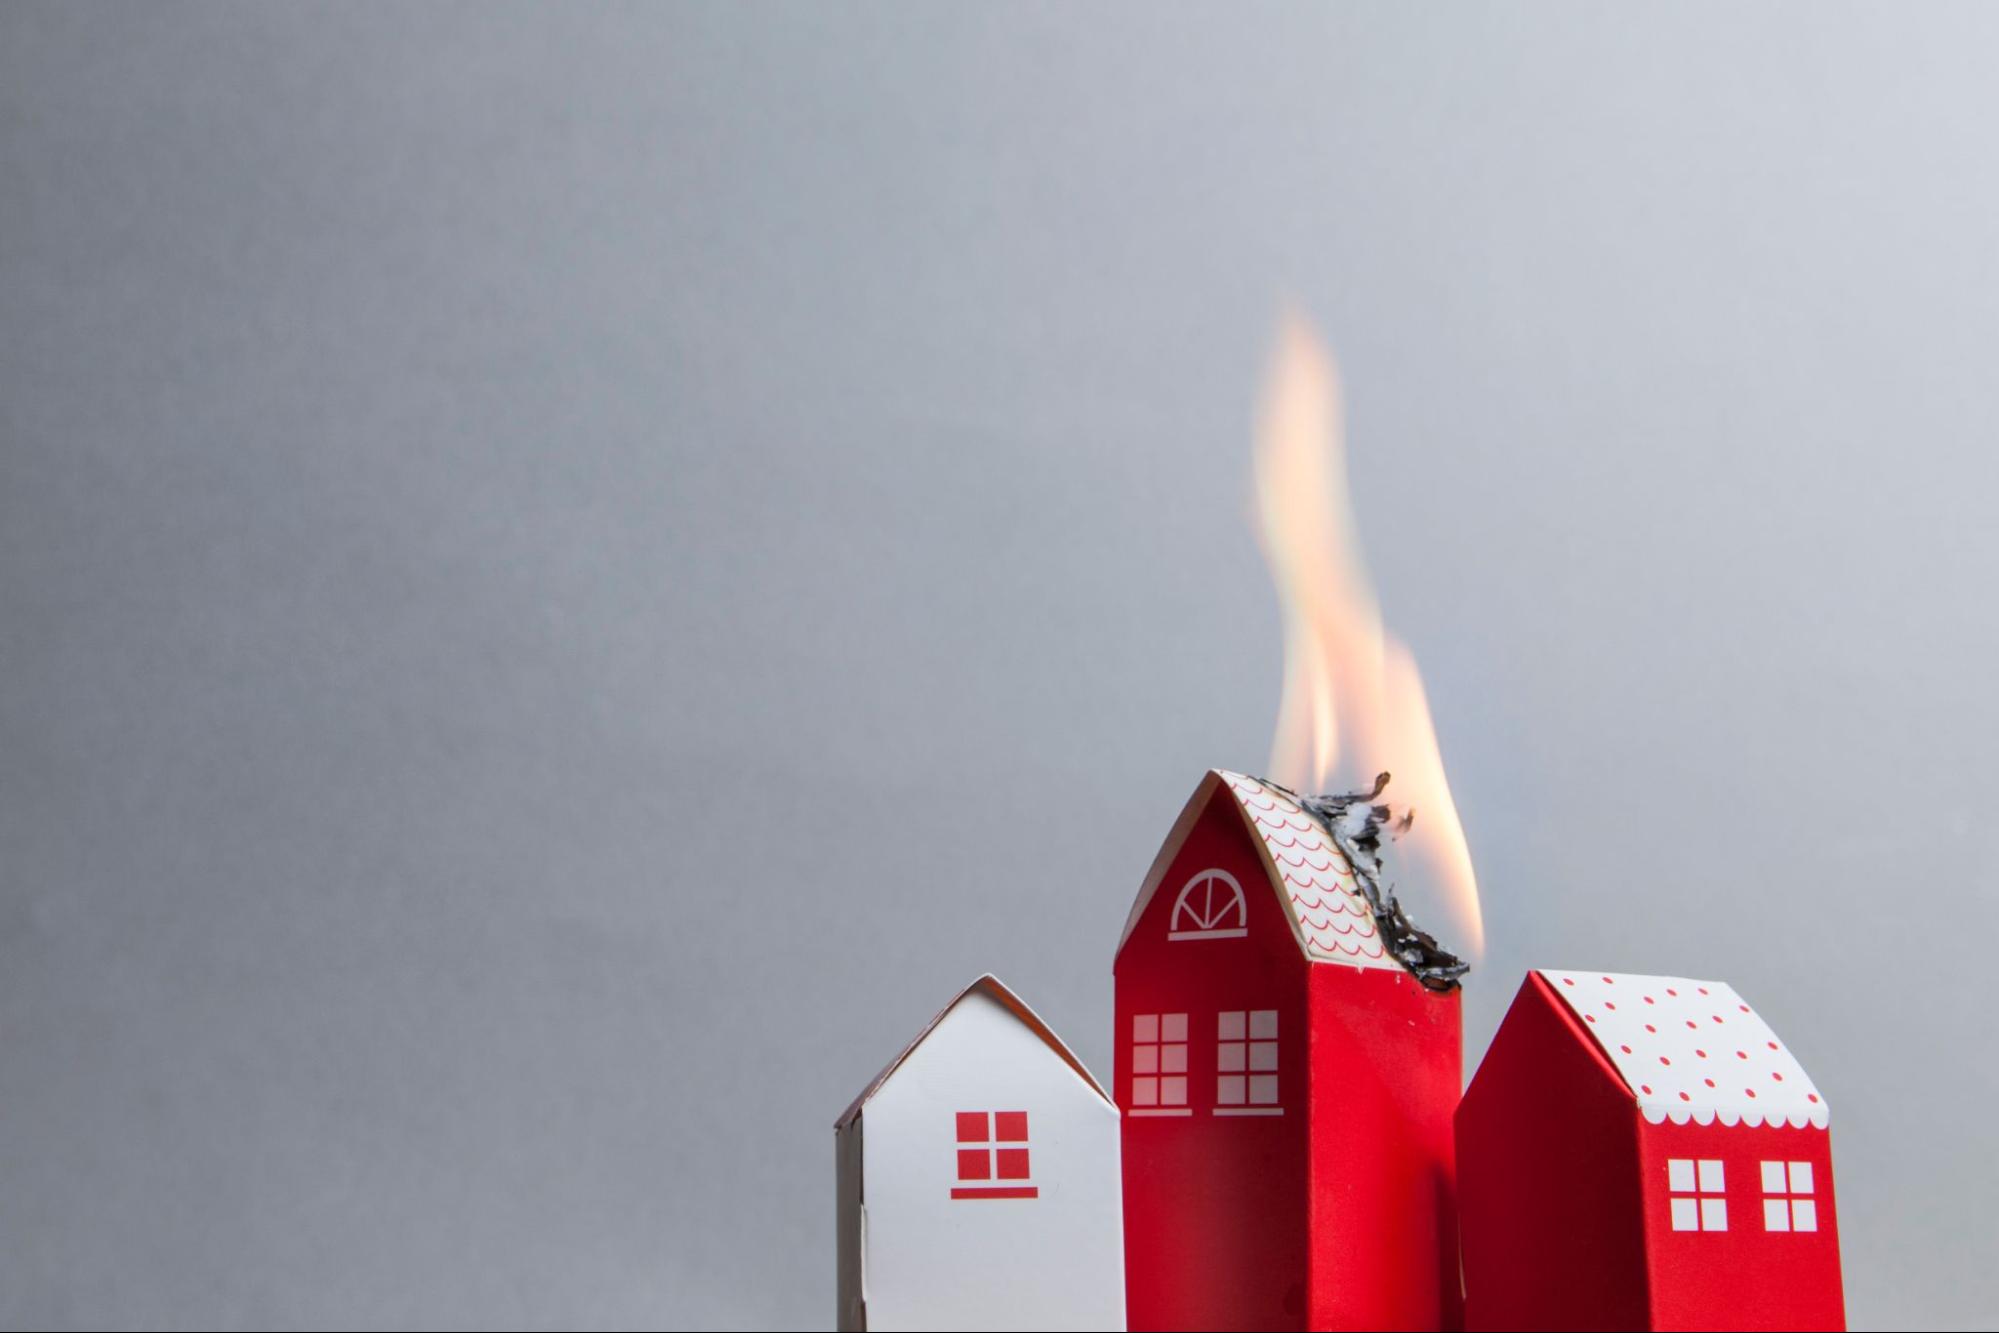 miniature house on fire